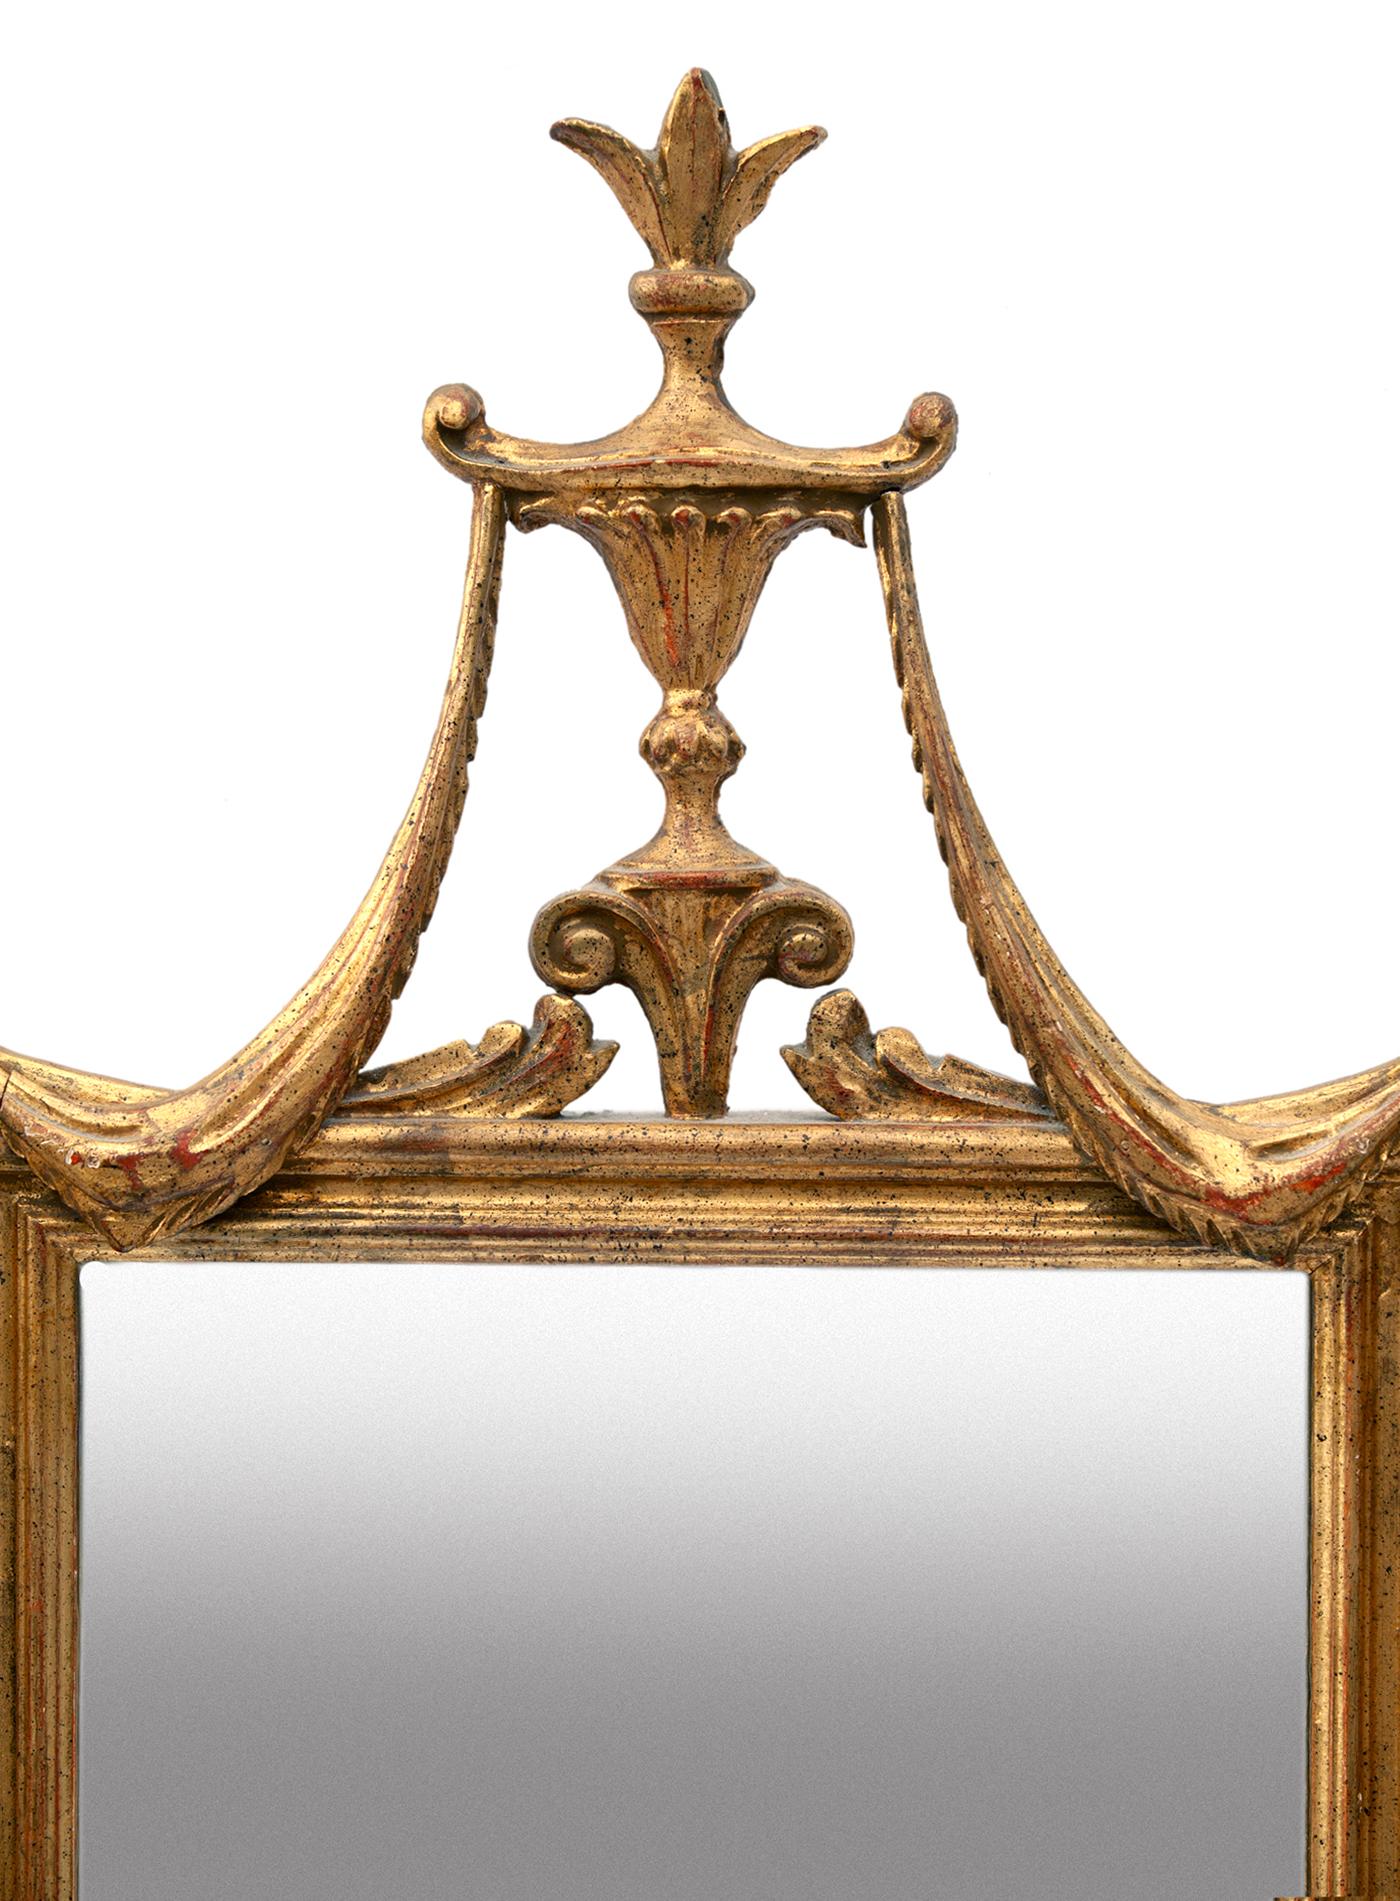 Un cadre rectangulaire en bois doré surmonté d'une urne qui porte de part et d'autre de spectaculaires guirlandes drapées.
Le miroir original est placé dans un magnifique cadre en résine dorée.
Une grande pièce d'apparat qui mettra en valeur